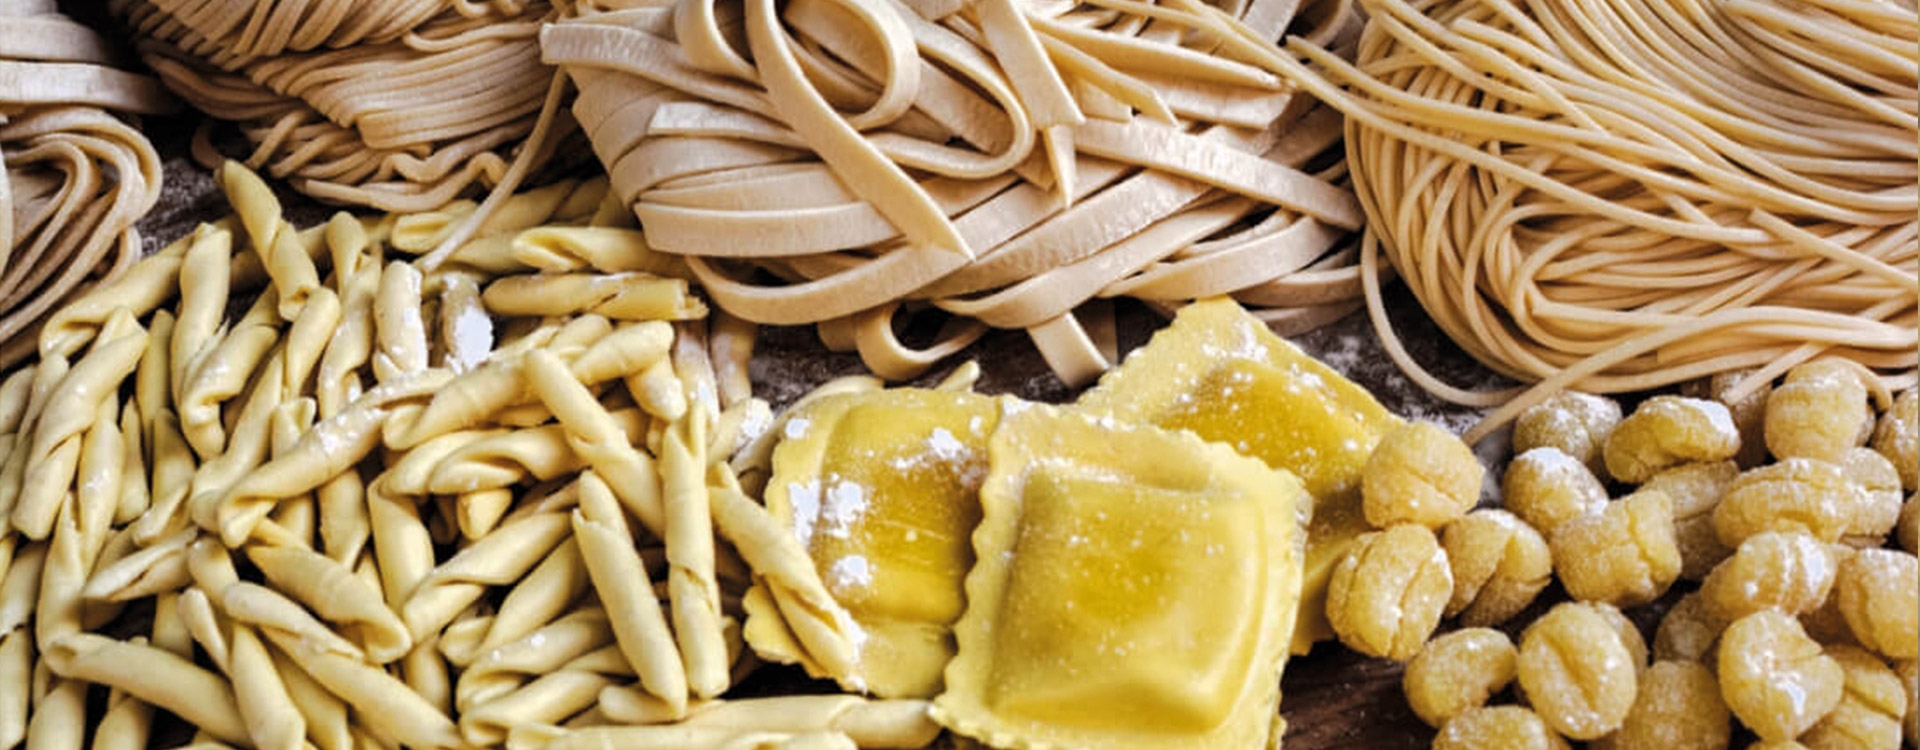 https://www.italybite.it/img/ybc_blog/post/large-italian-homemade-pasta.jpg